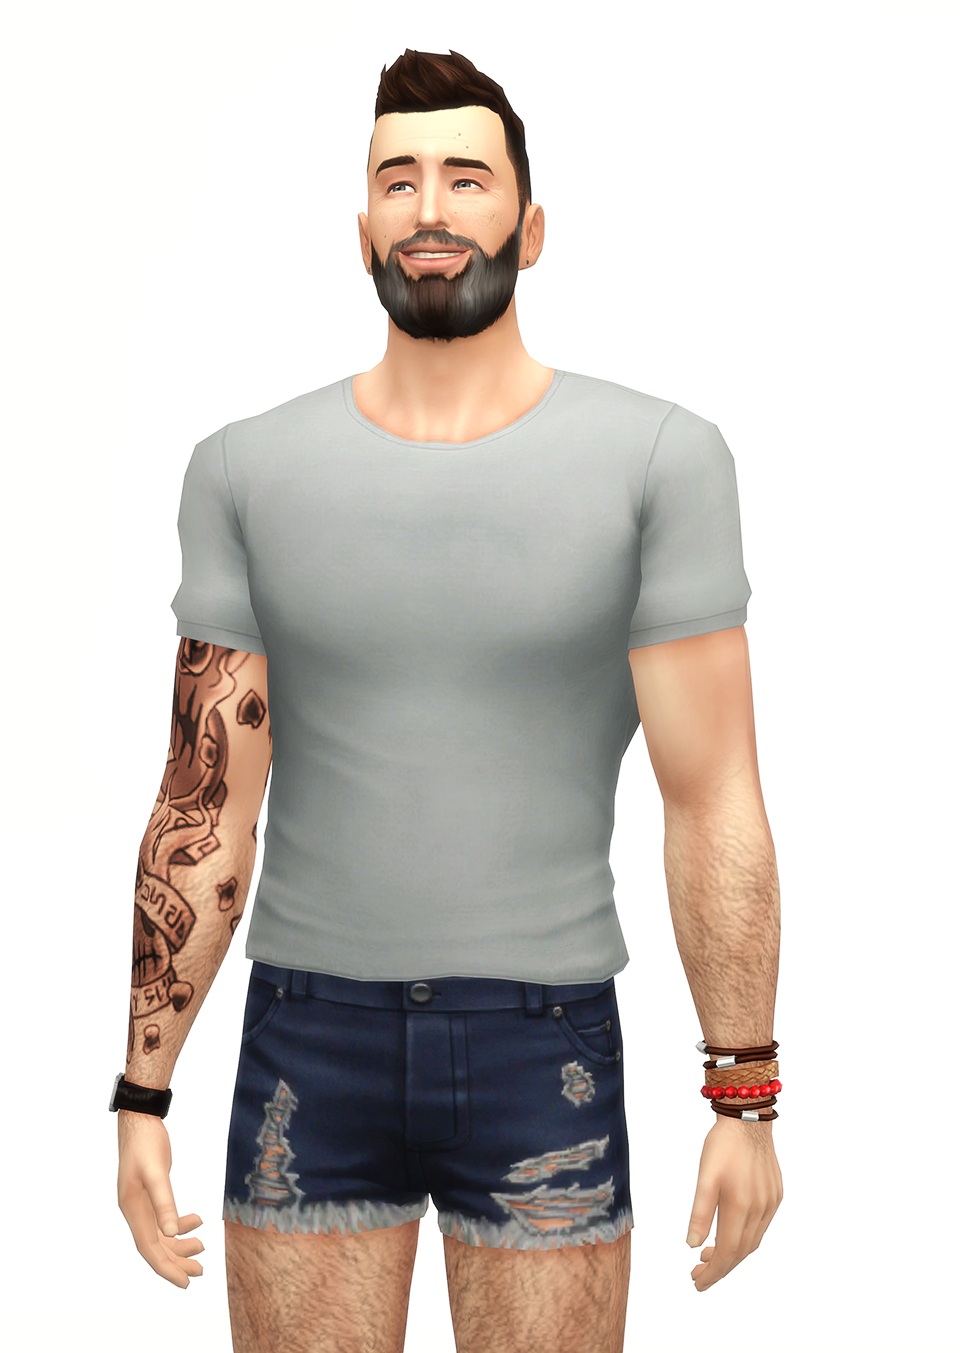 Shorter T-shirt 2017 - The Sims 4 Create a Sim - CurseForge